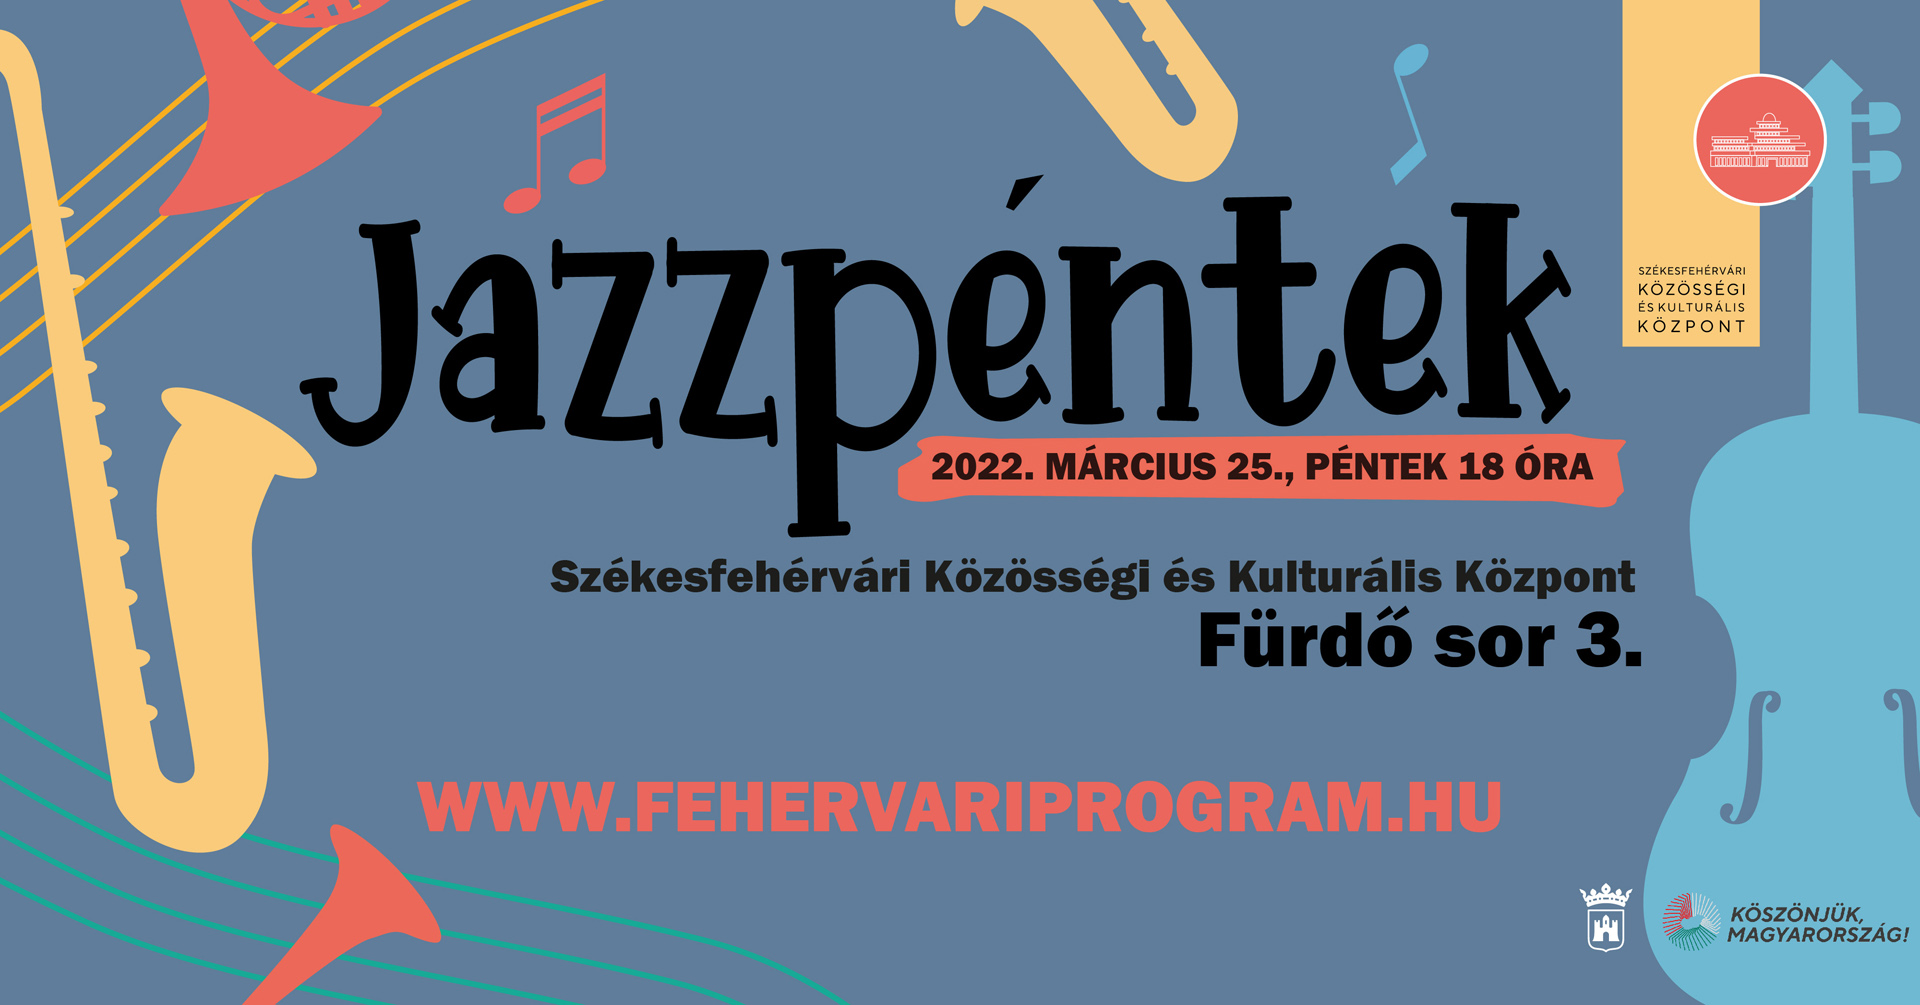 Jazzpéntek a Fürdő soron - Elek István Quartet koncert lesz ma este